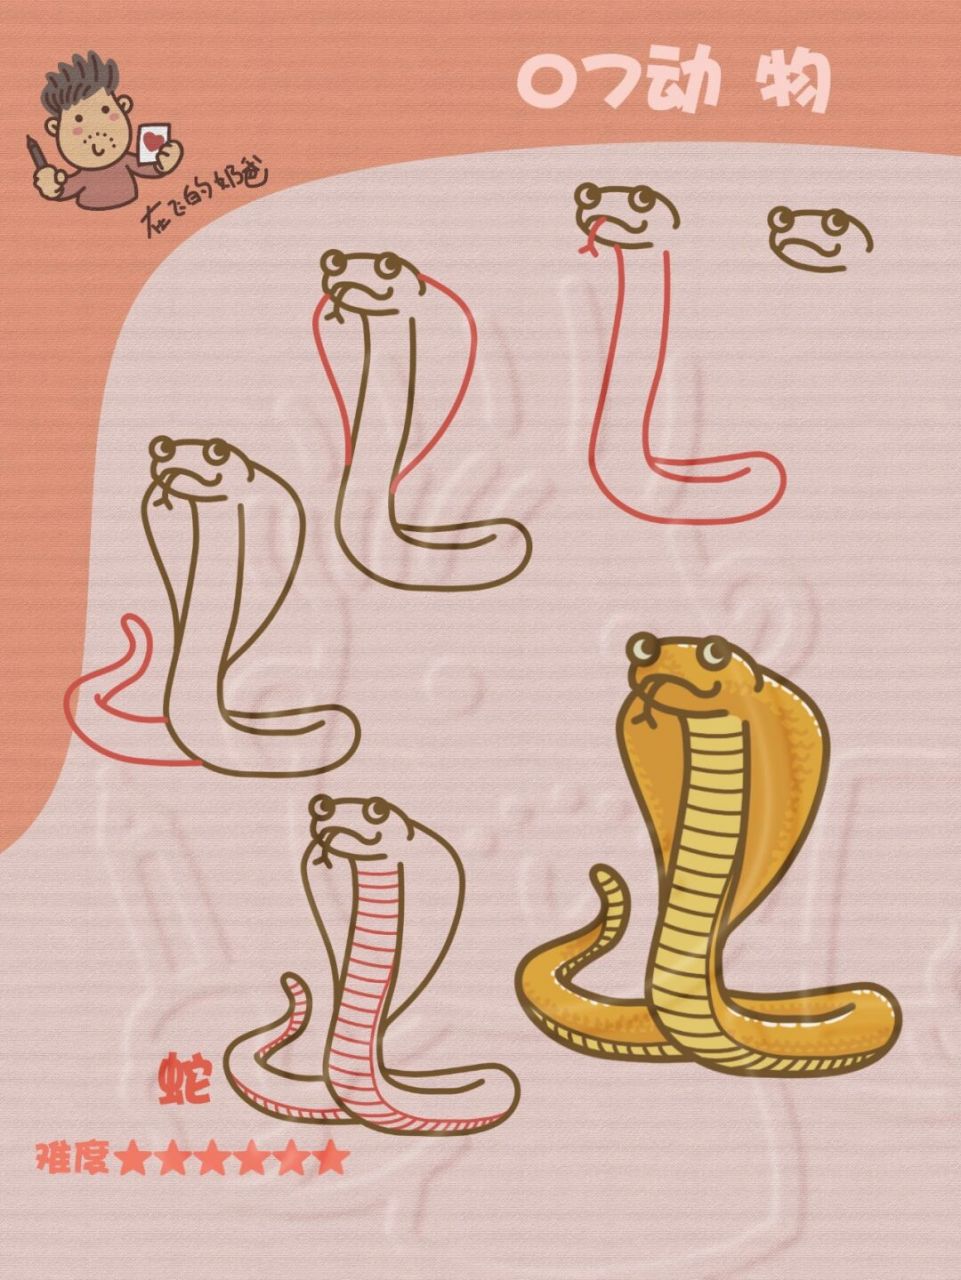 蛇的画法 简笔画图片